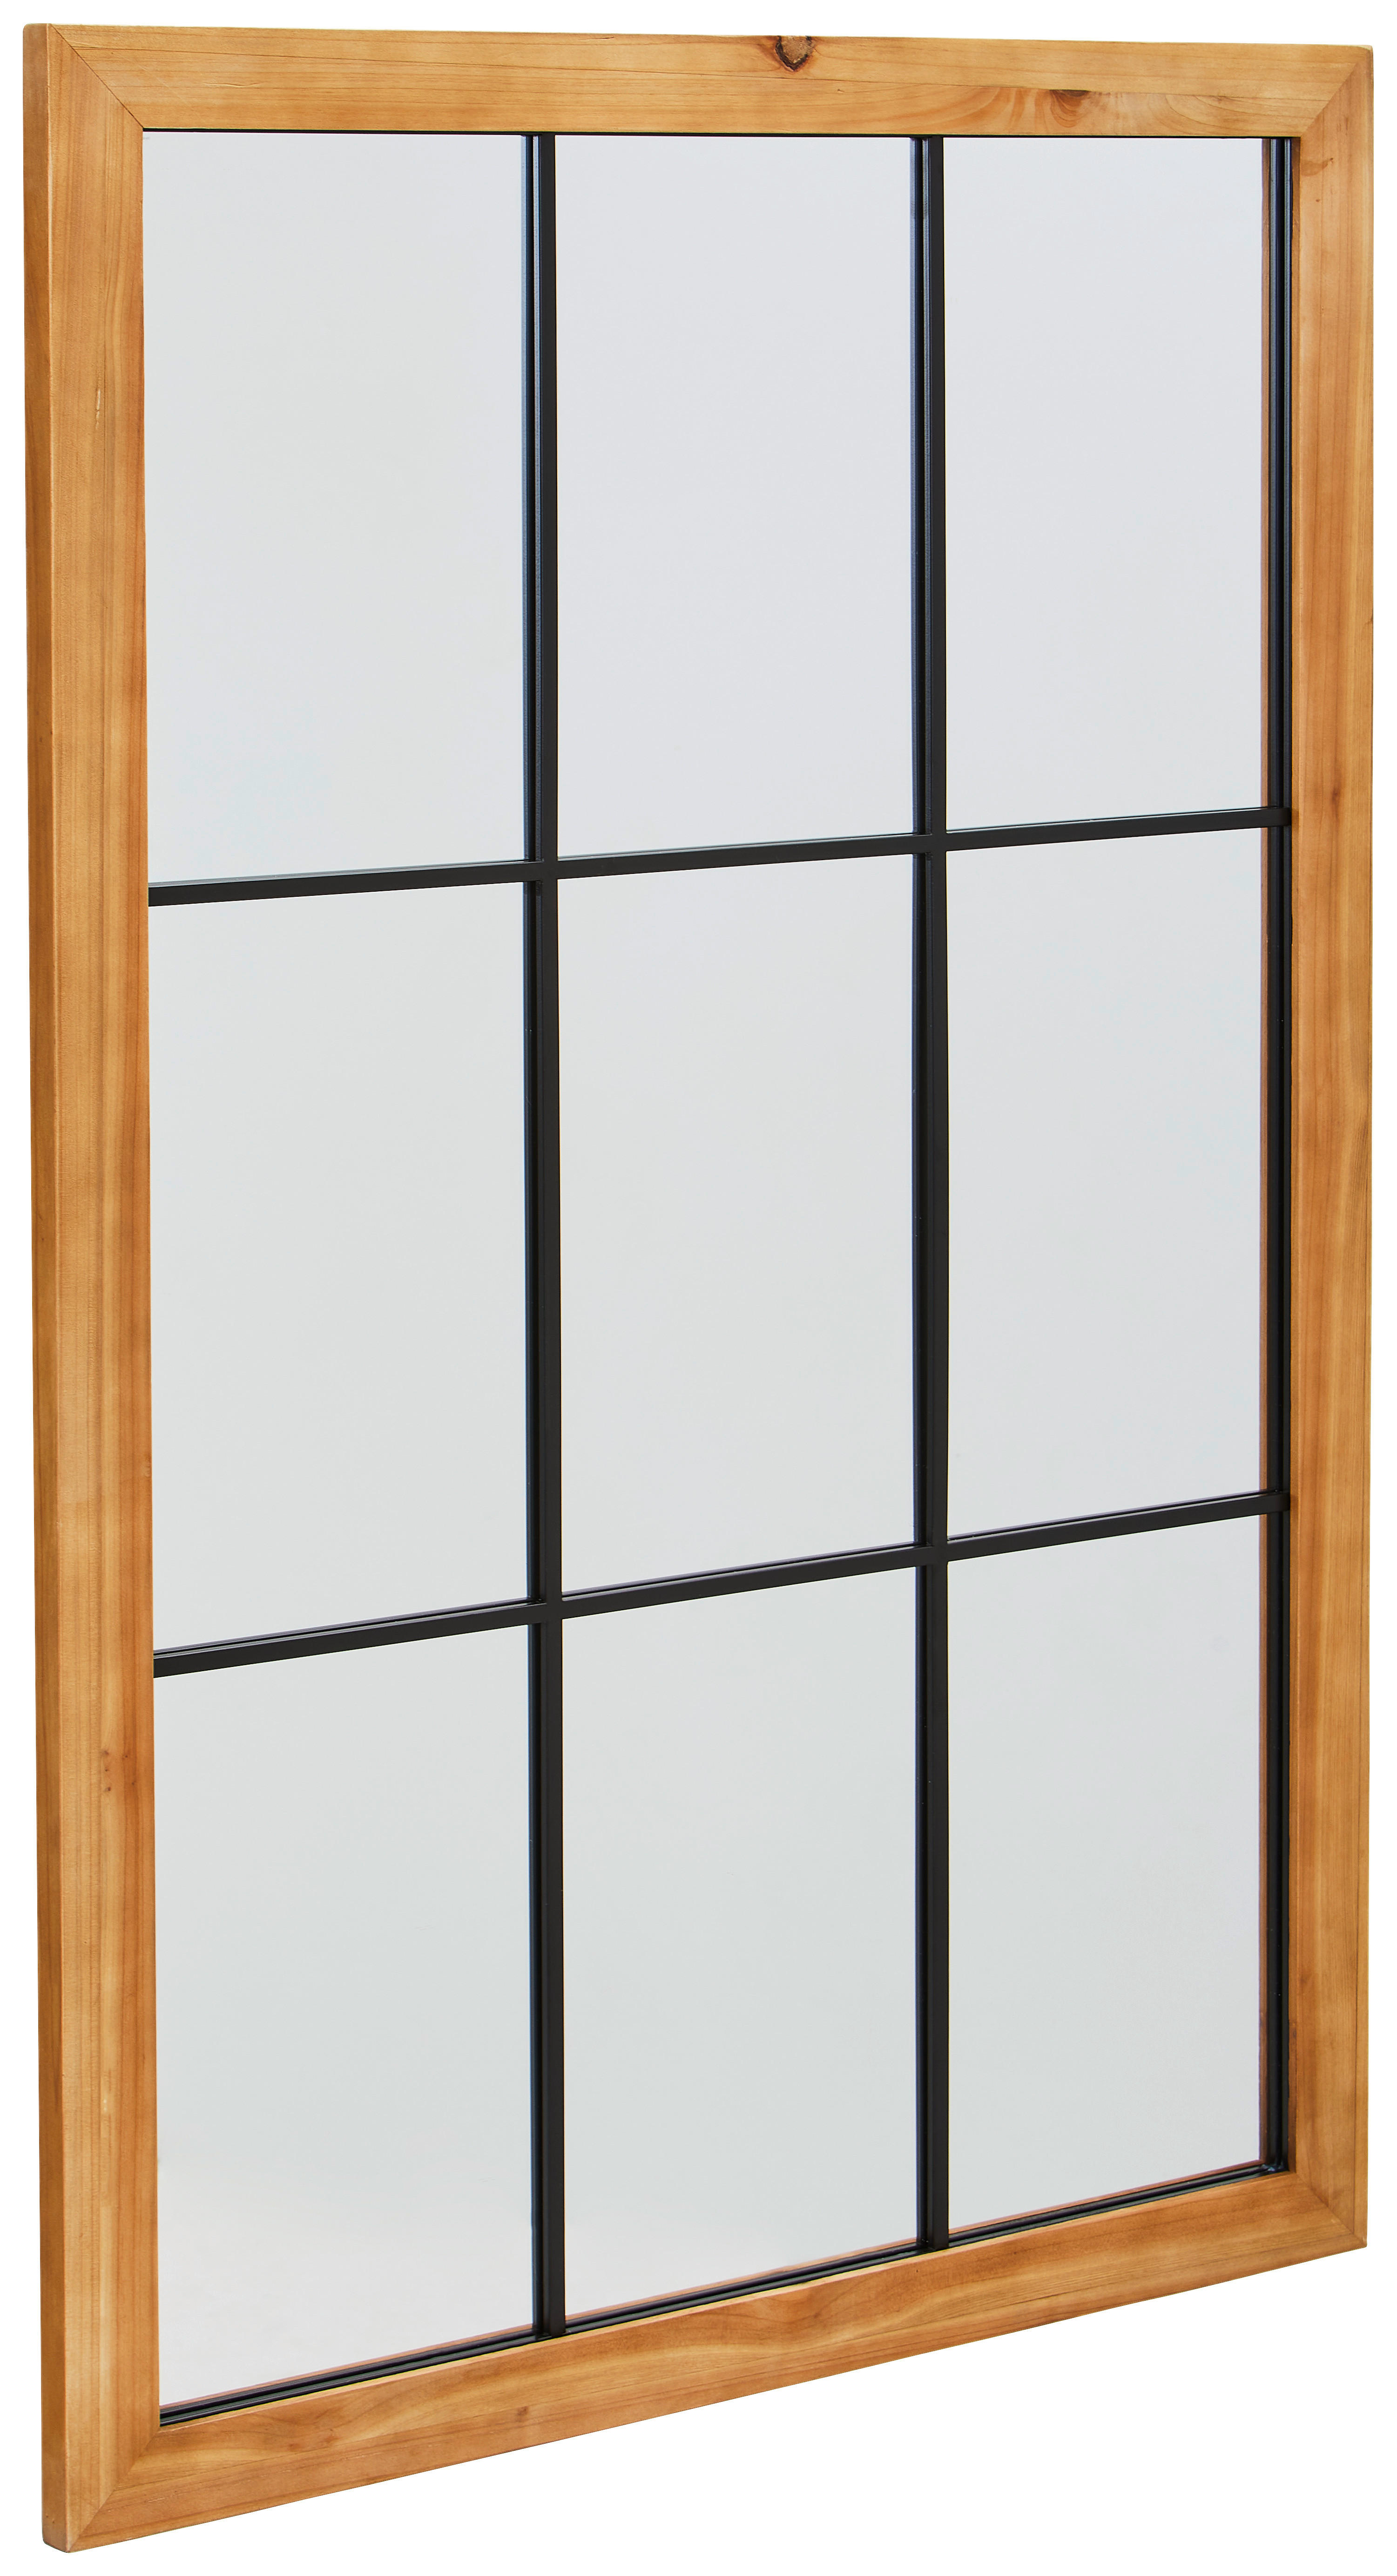 WANDSPIEGEL 80/120/3 cm    - Schwarz/Naturfarben, Design, Glas/Holz (80/120/3cm) - MID.YOU